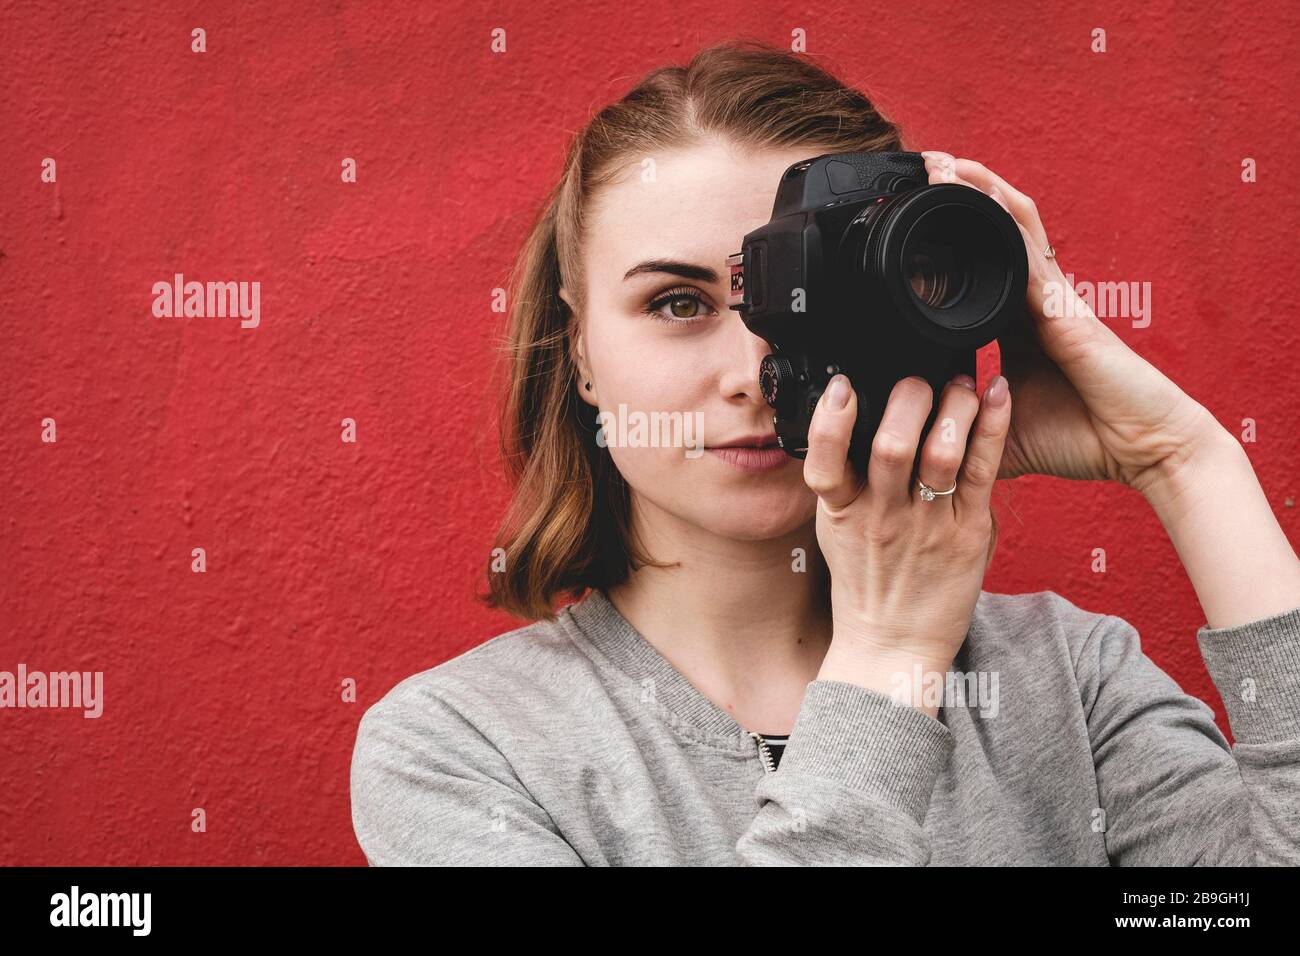 Fotografin hält im Porträt eine Kamera Stockfoto